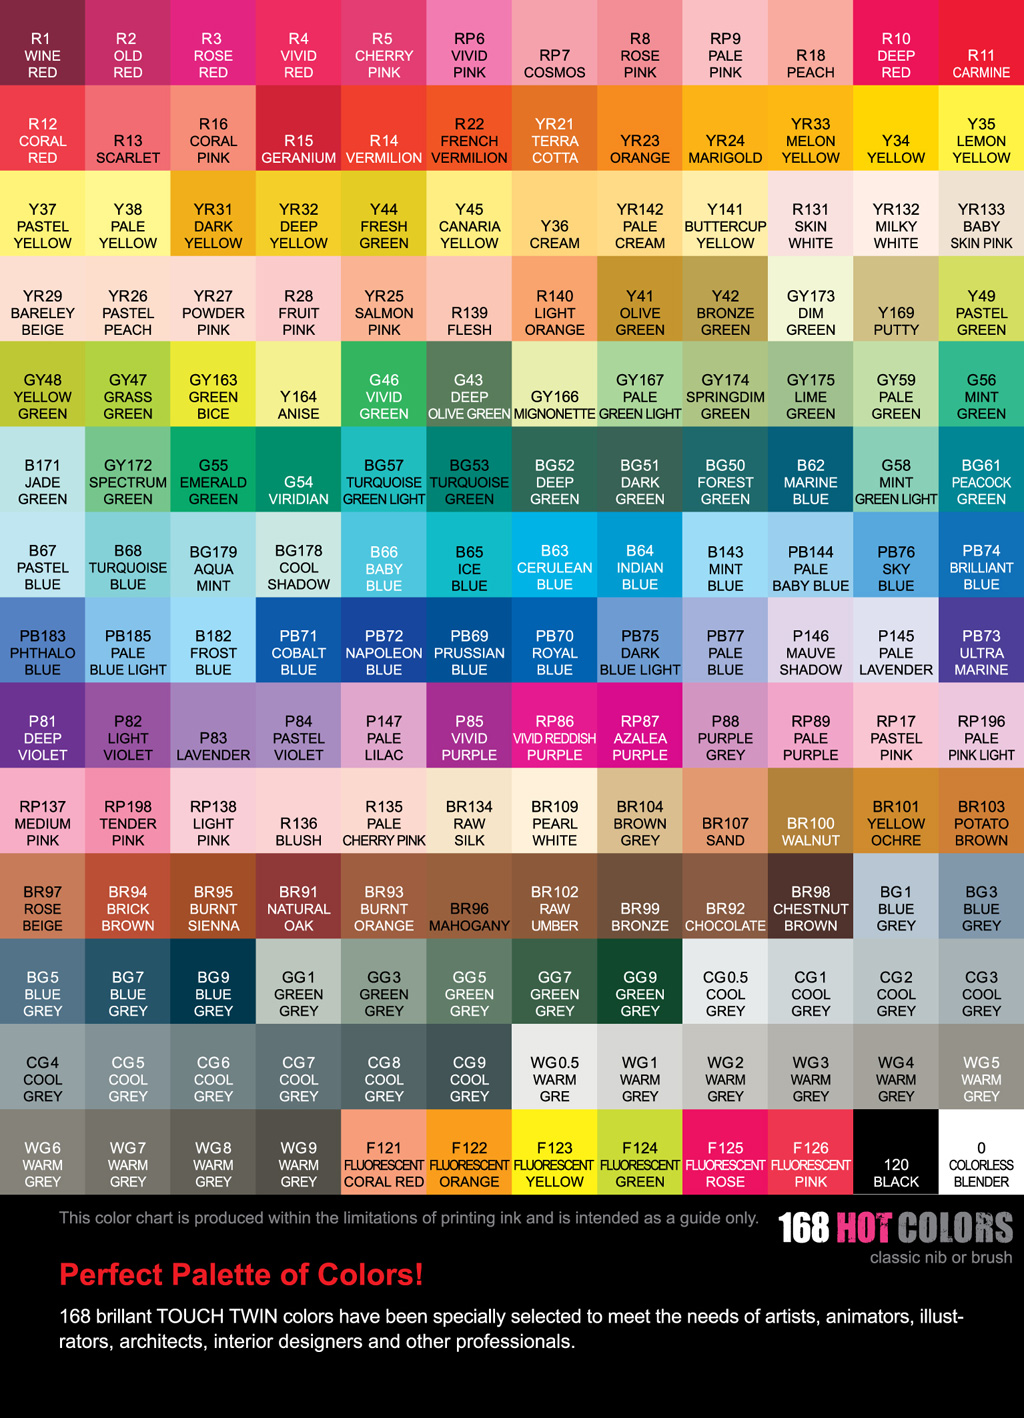 Shinhan Color Chart